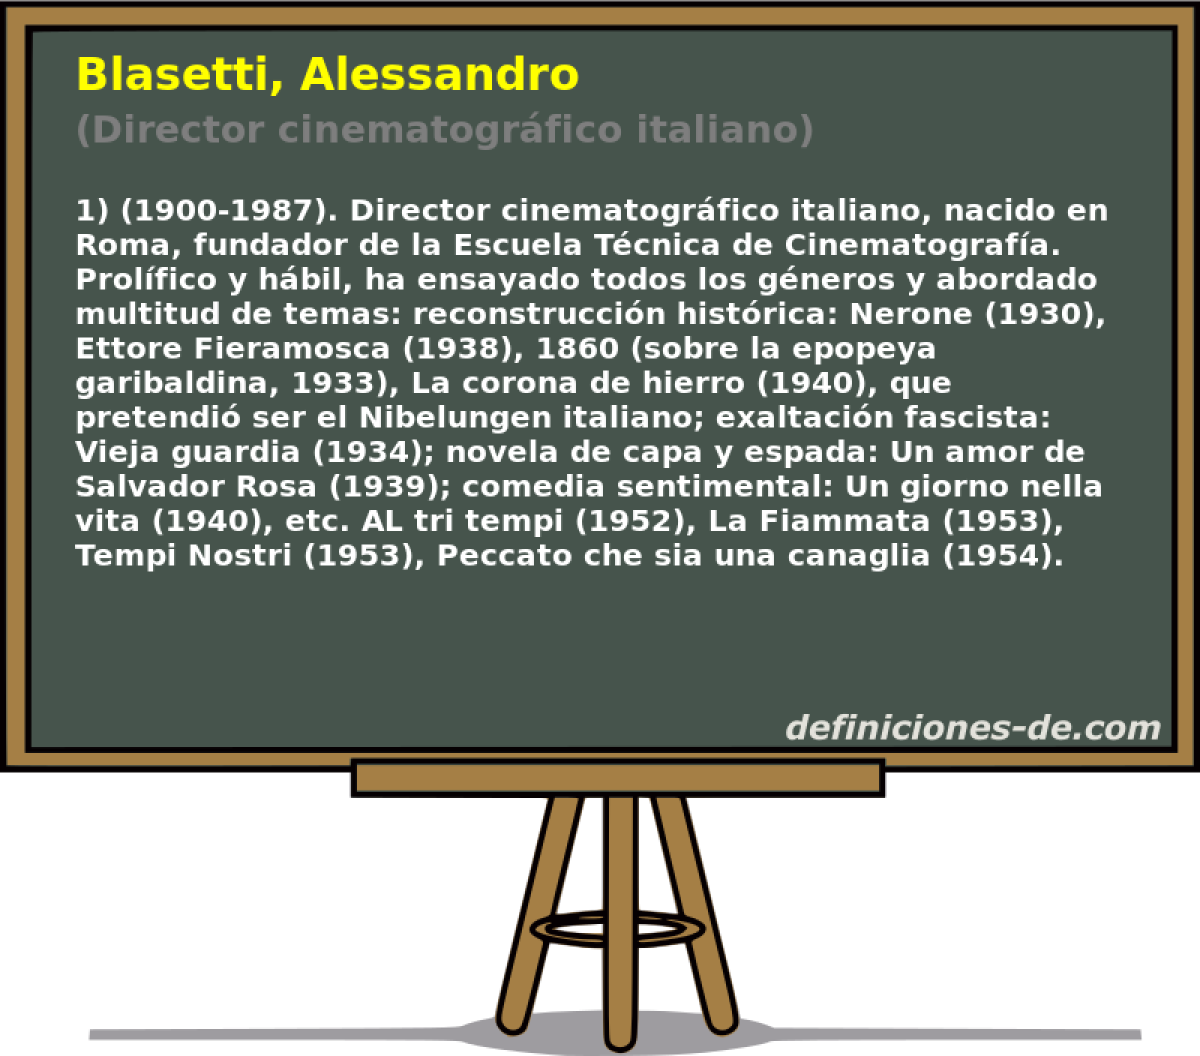 Blasetti, Alessandro (Director cinematogrfico italiano)